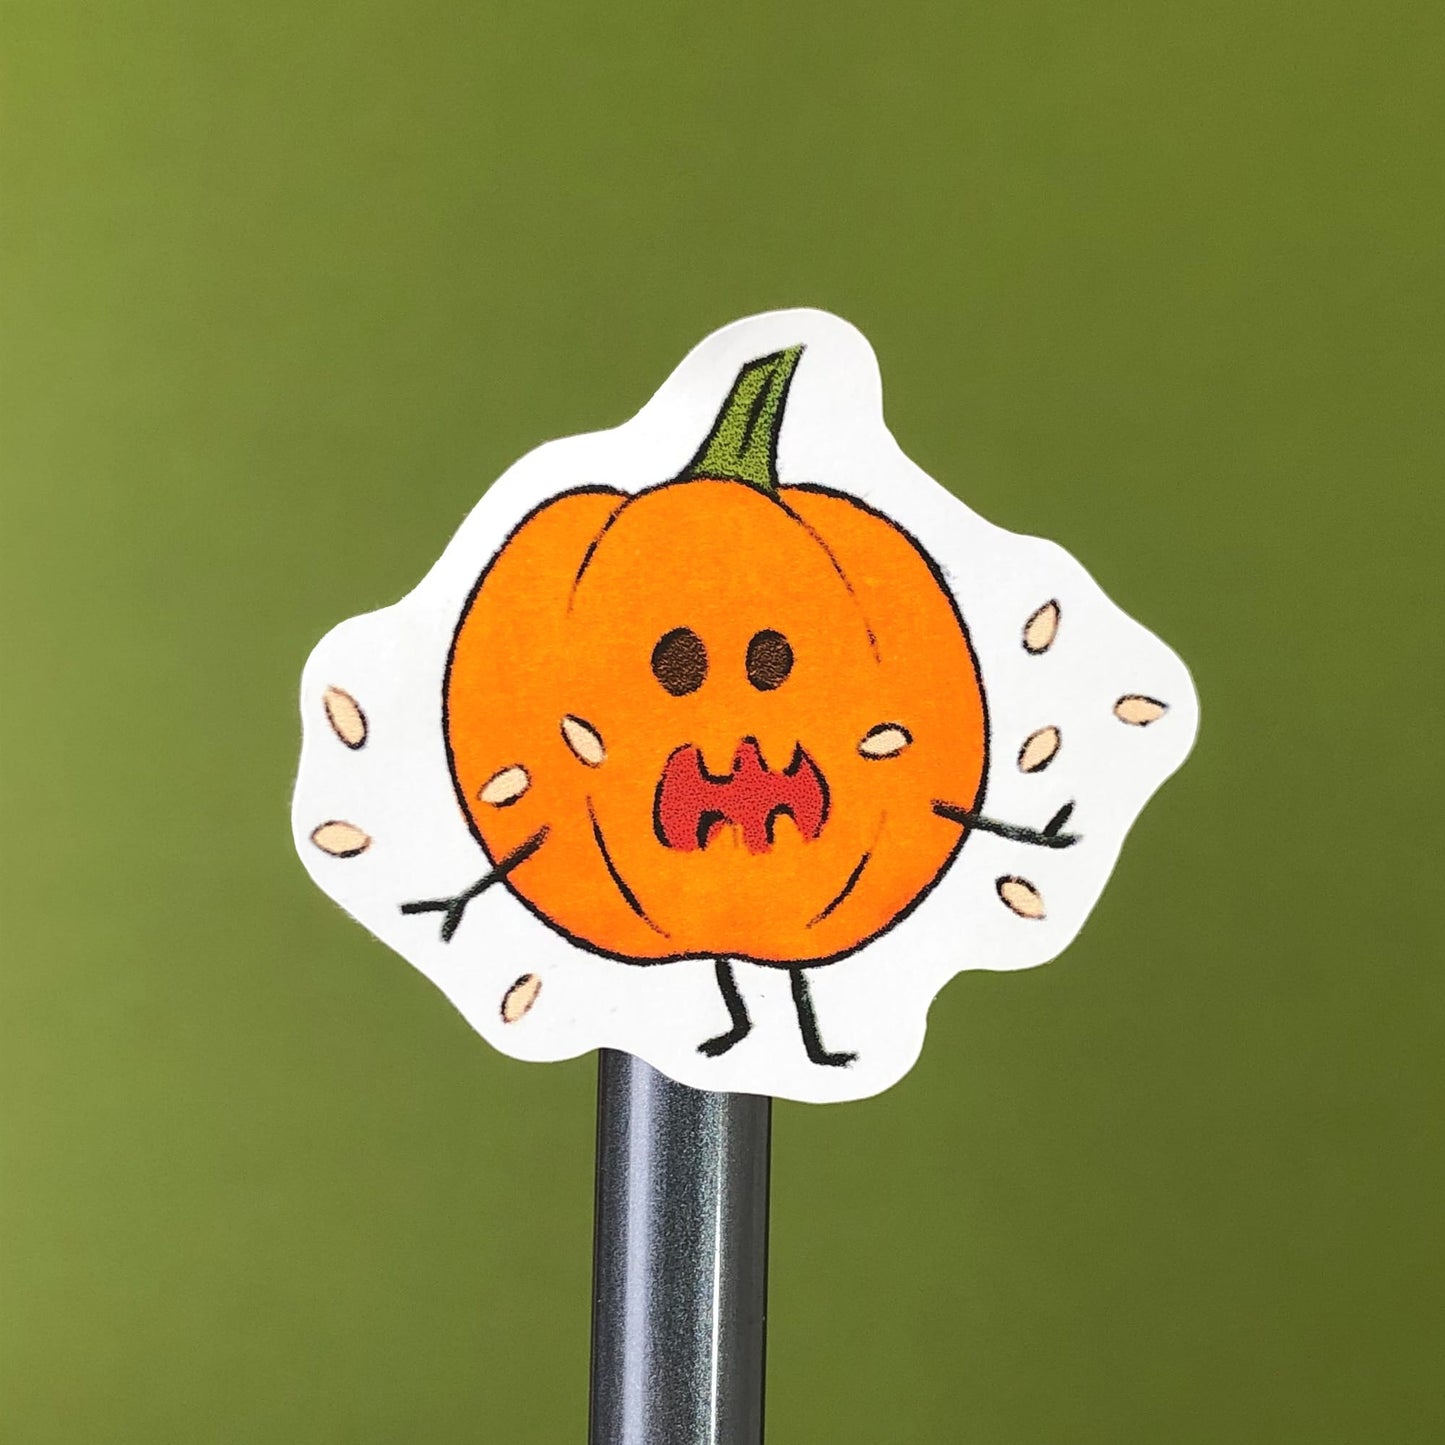 Cartoon Pumpkin Sticker on a pencil from close view.